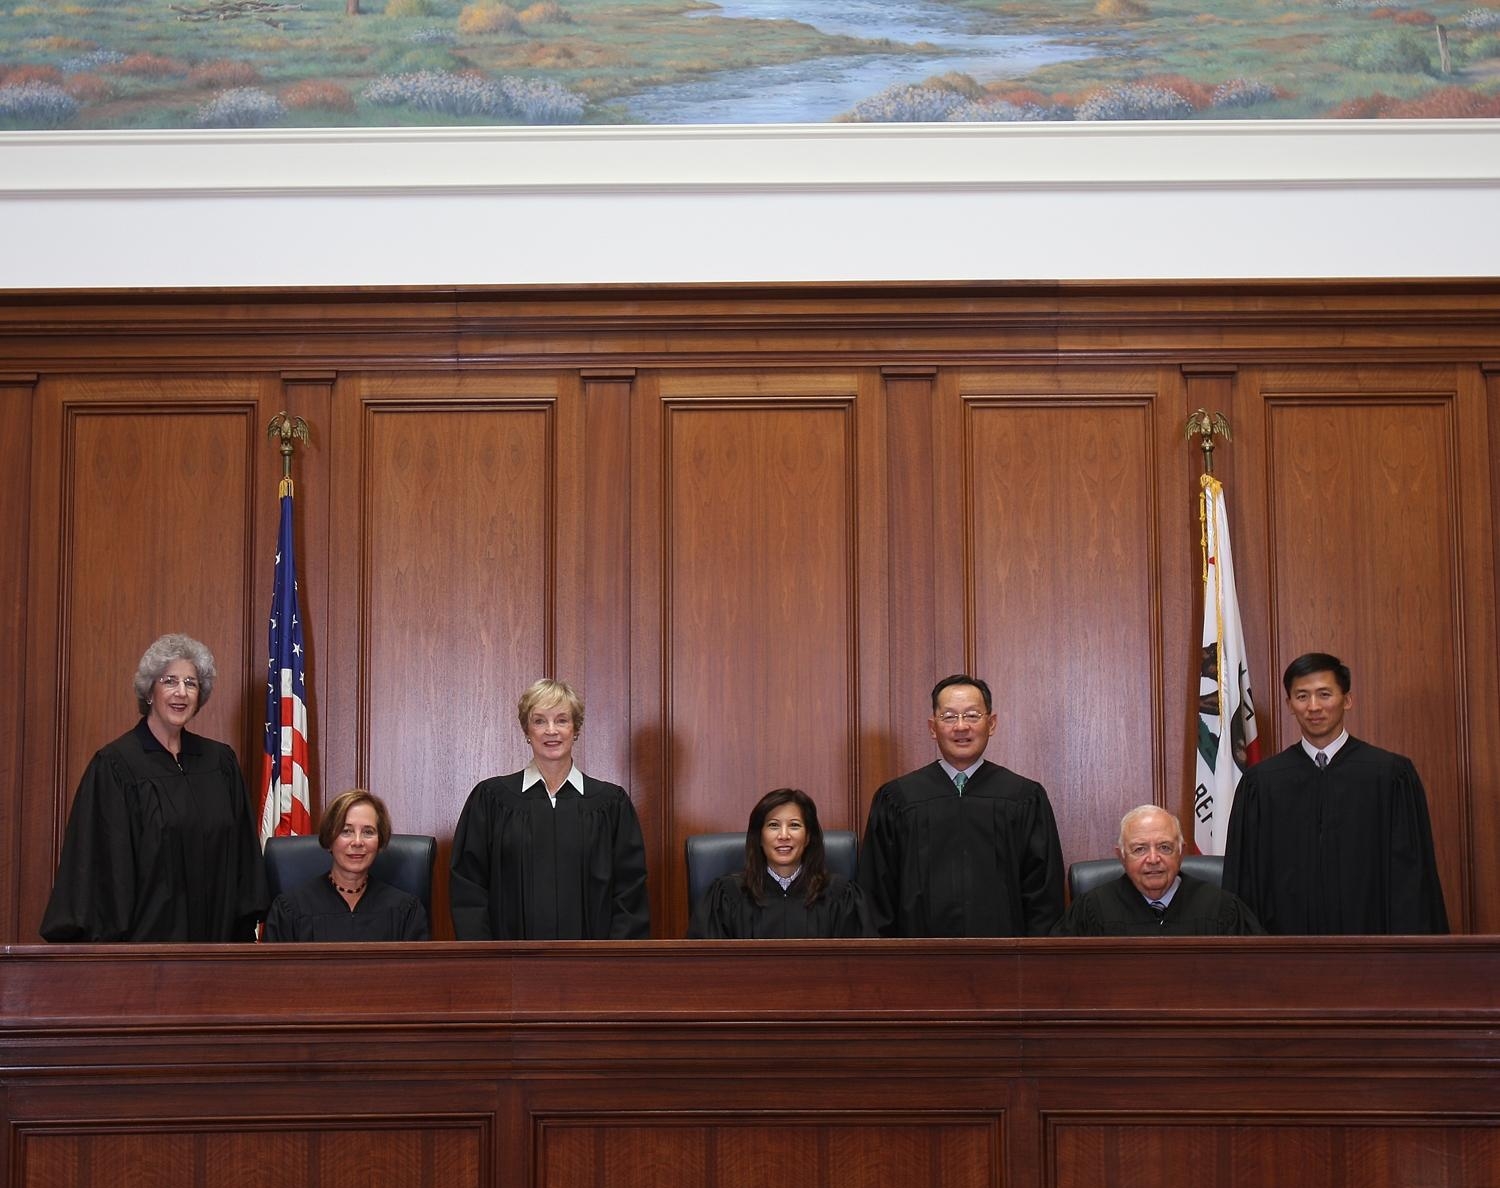 Состав судей Верховного федерального суда США